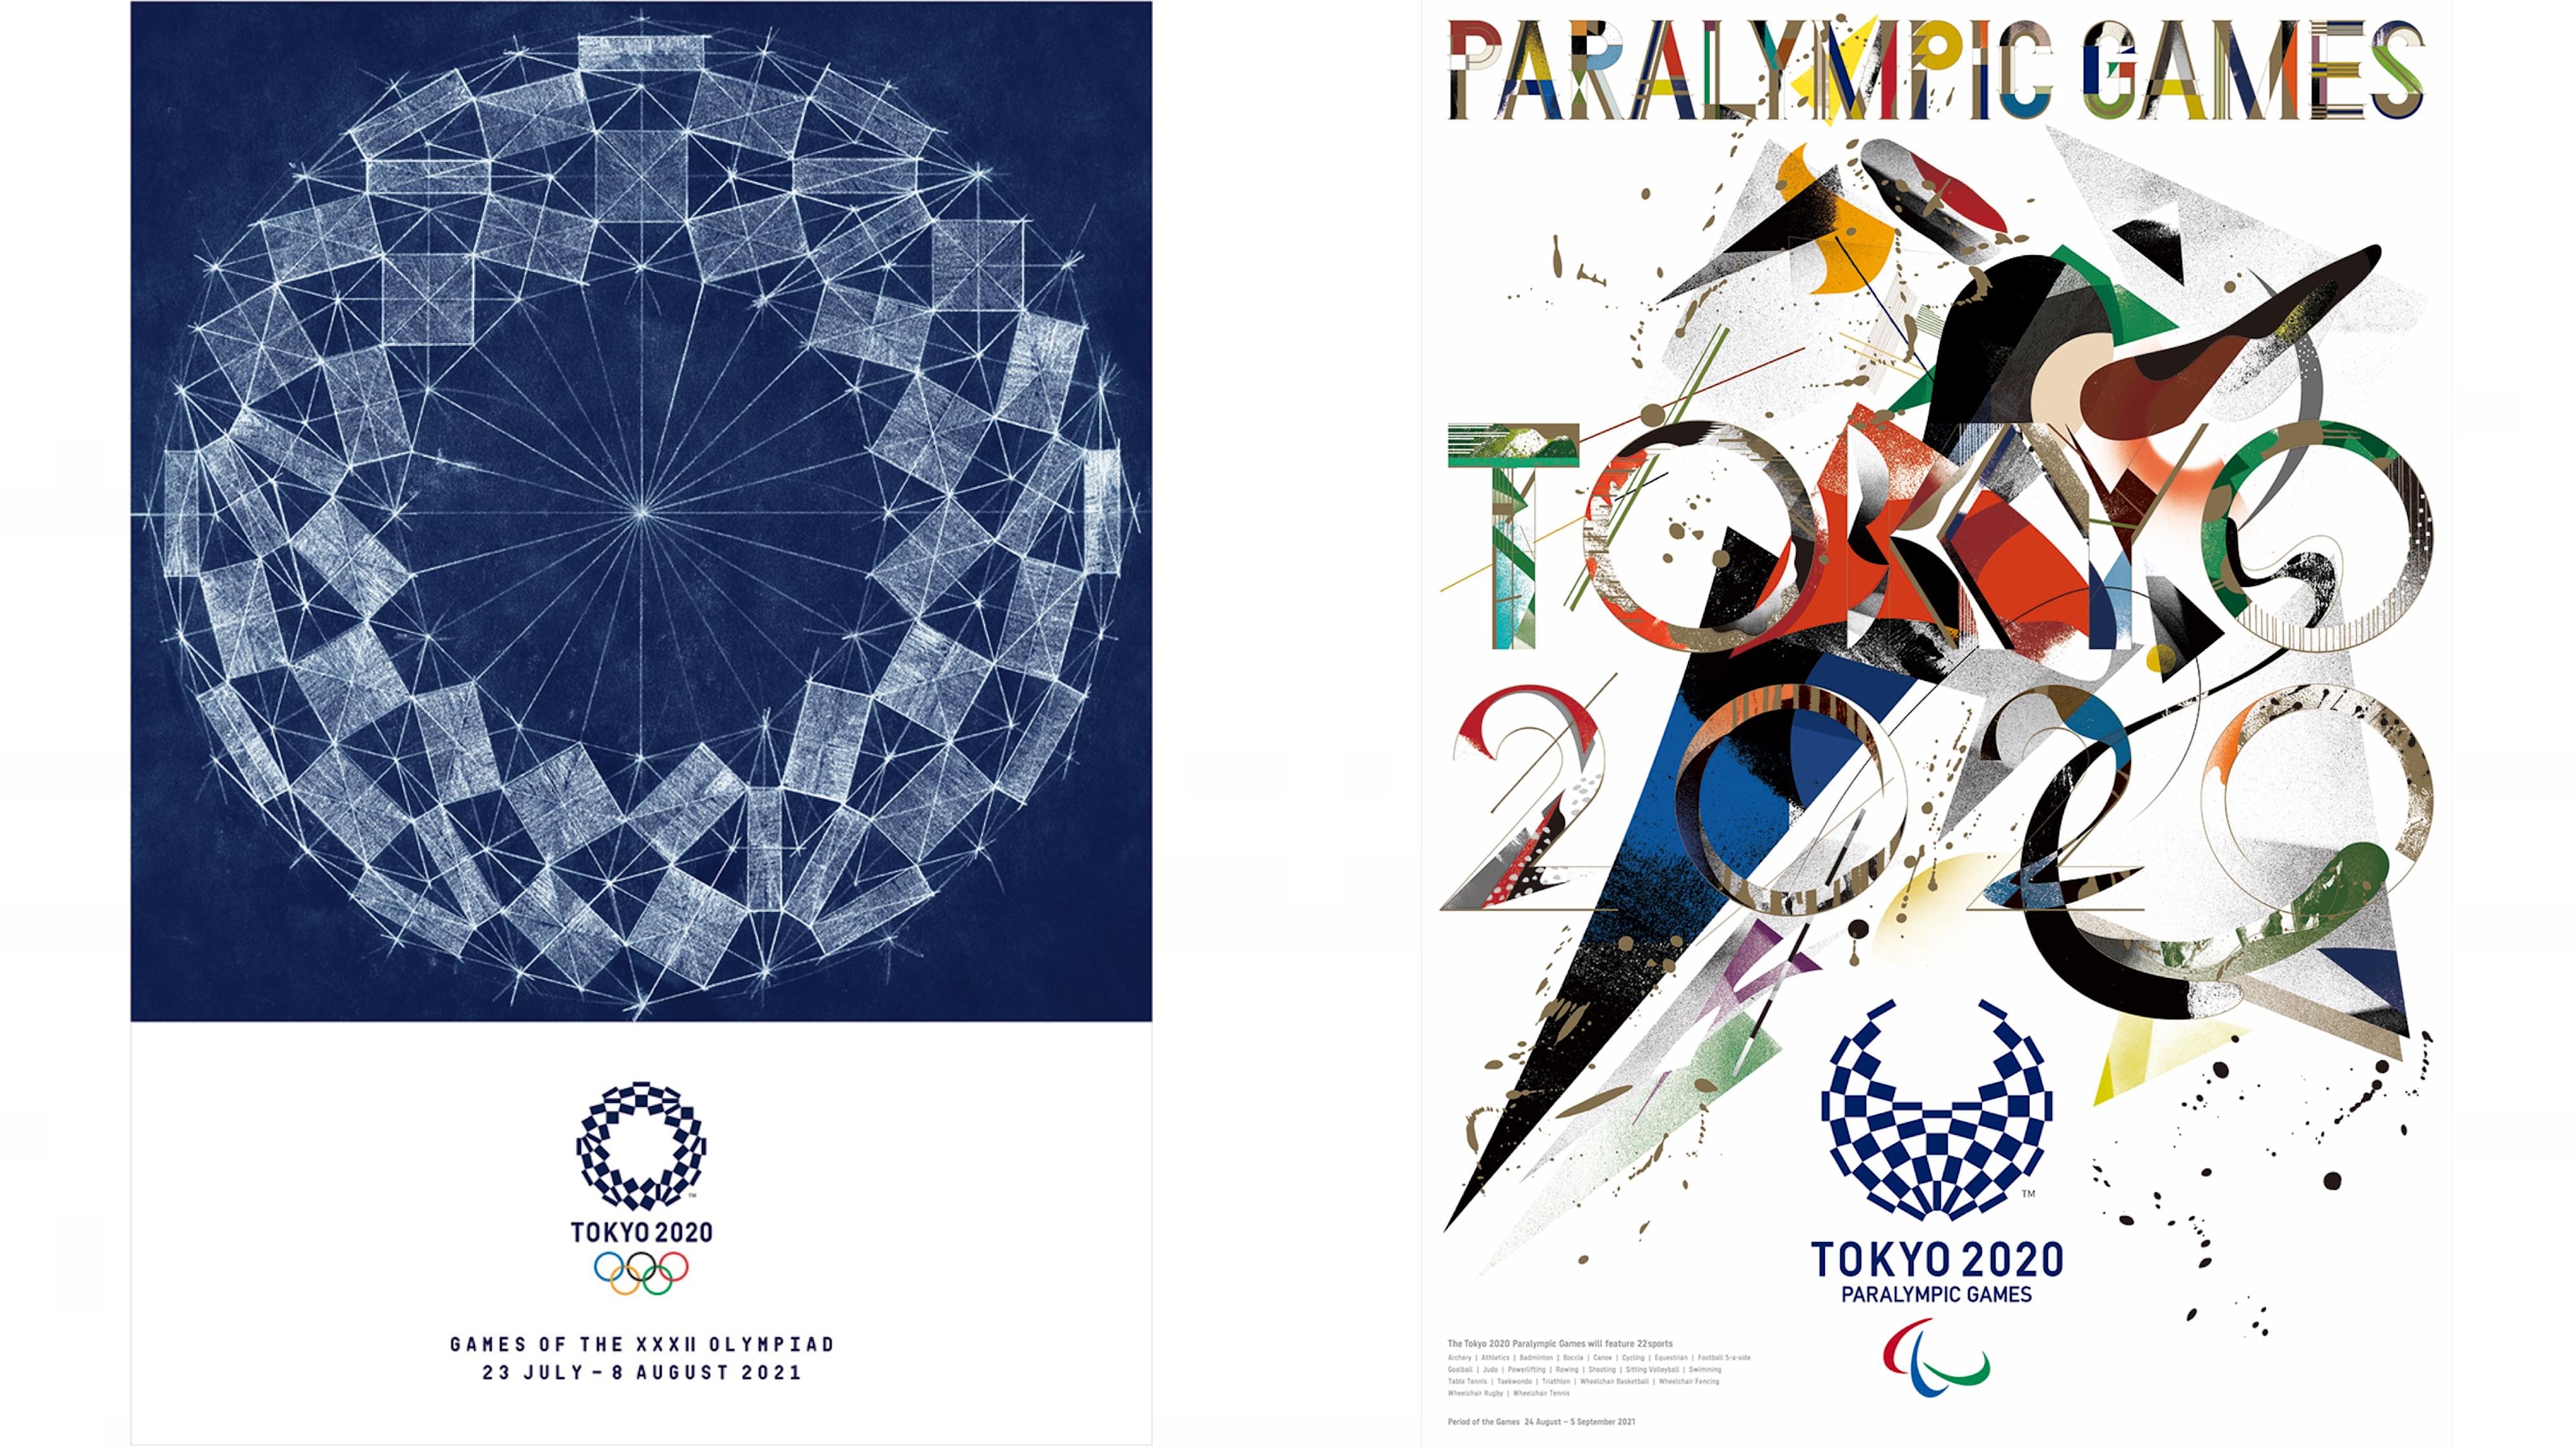 東京大会を象徴する アイコニックポスター 2作品が決定 野老朝雄氏 デザインユニット Goo Choki Par が制作